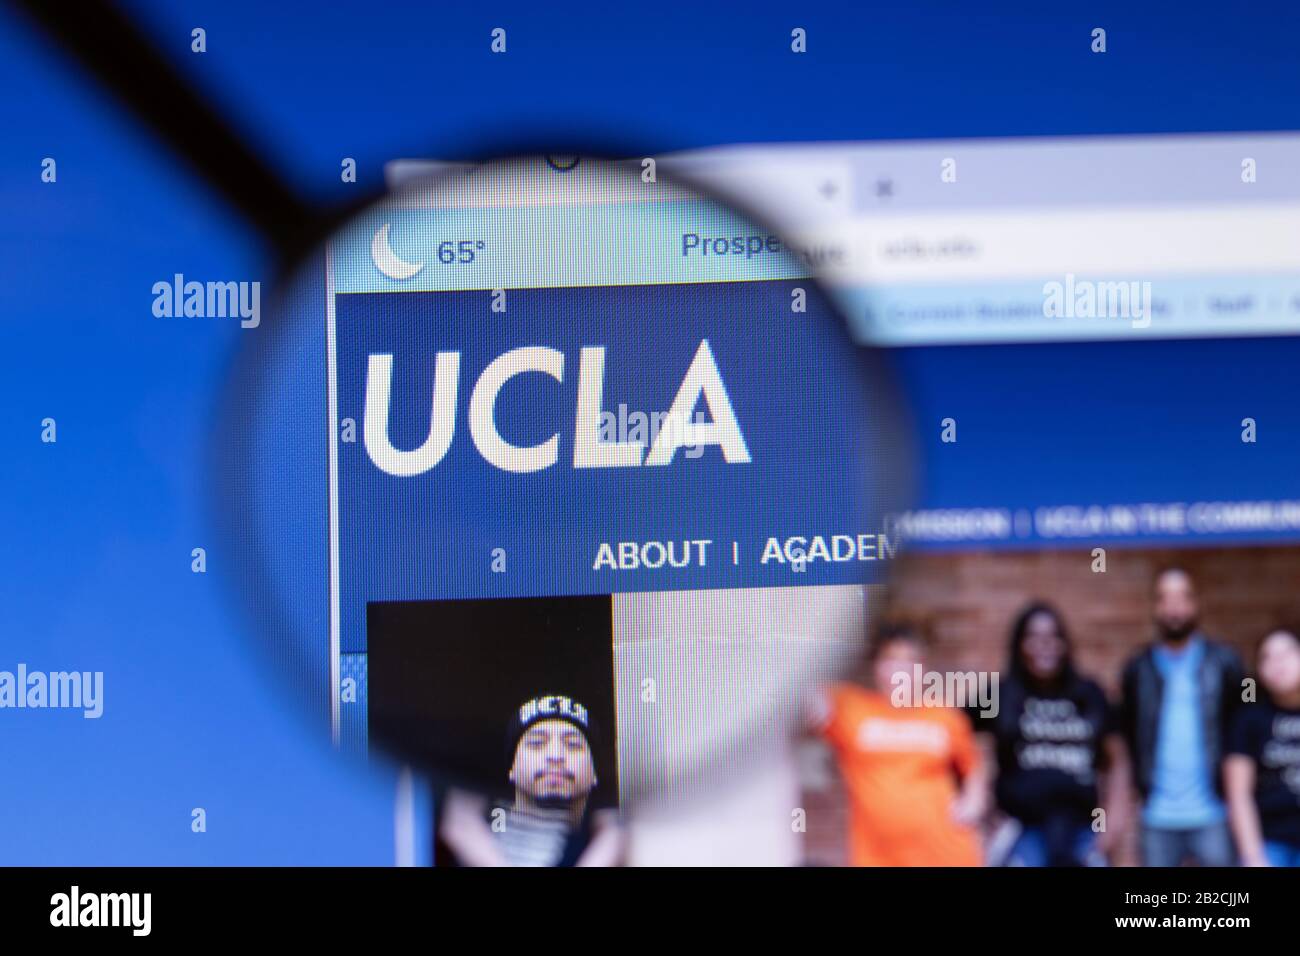 Los Angeles, Californie, États-Unis - 3 mars 2020: University of California, Los Angeles site Web UCLA logo visible sur l'écran d'affichage, illustratif Banque D'Images